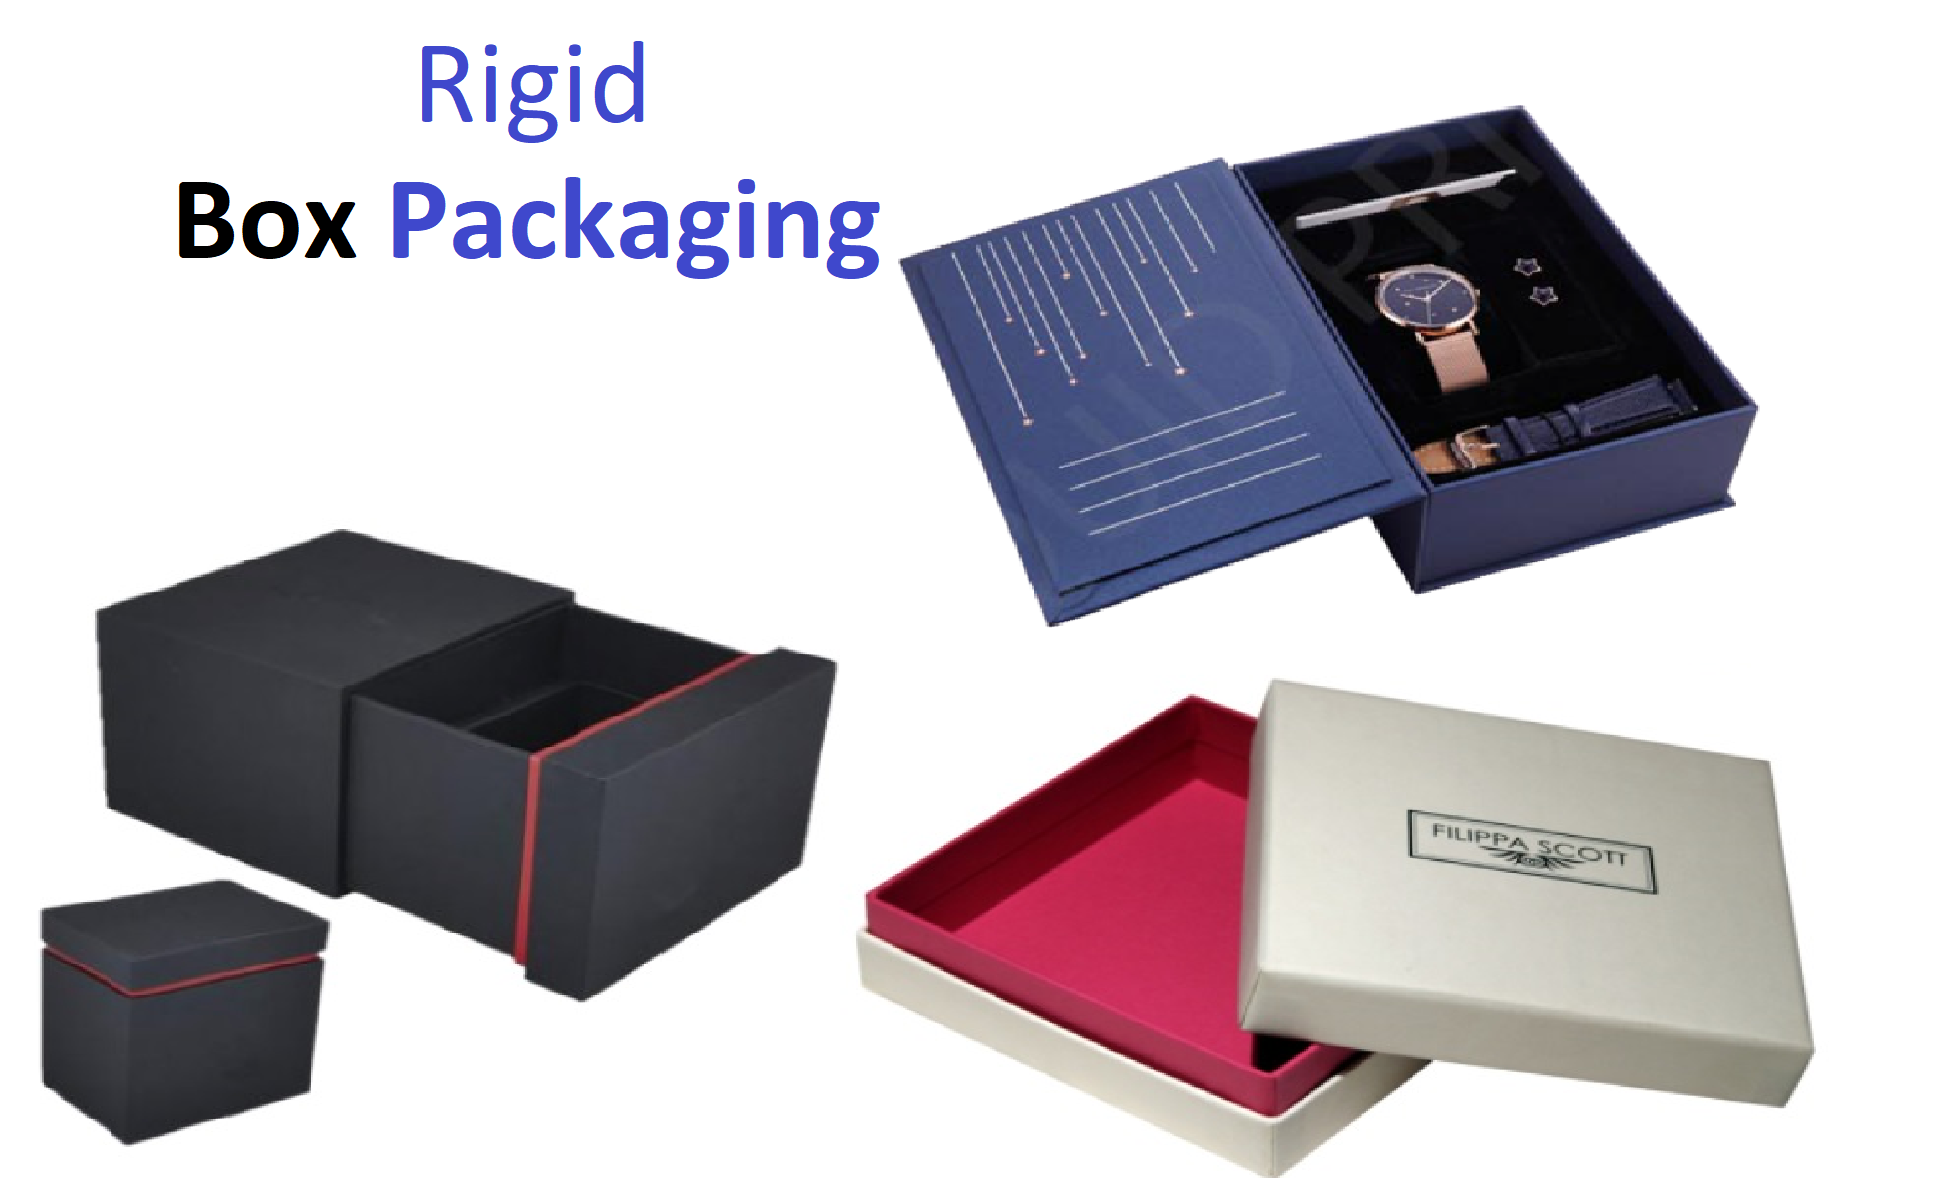 Rigid boxes wholesale